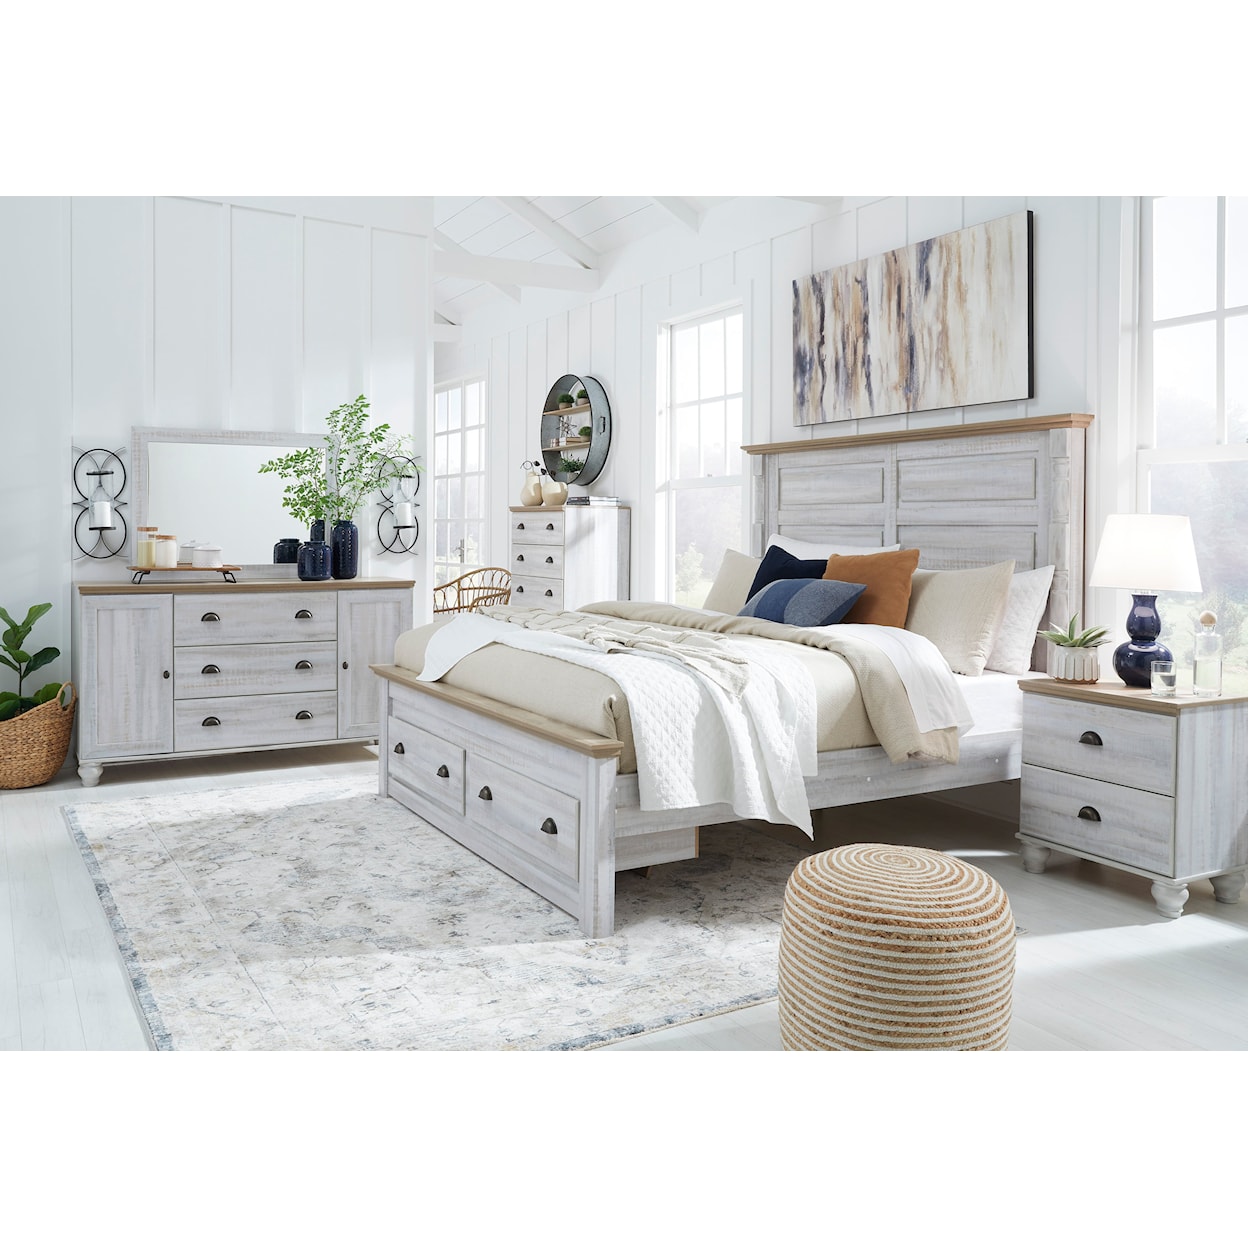 Signature Design by Ashley Furniture Haven Bay King Bedroom Set